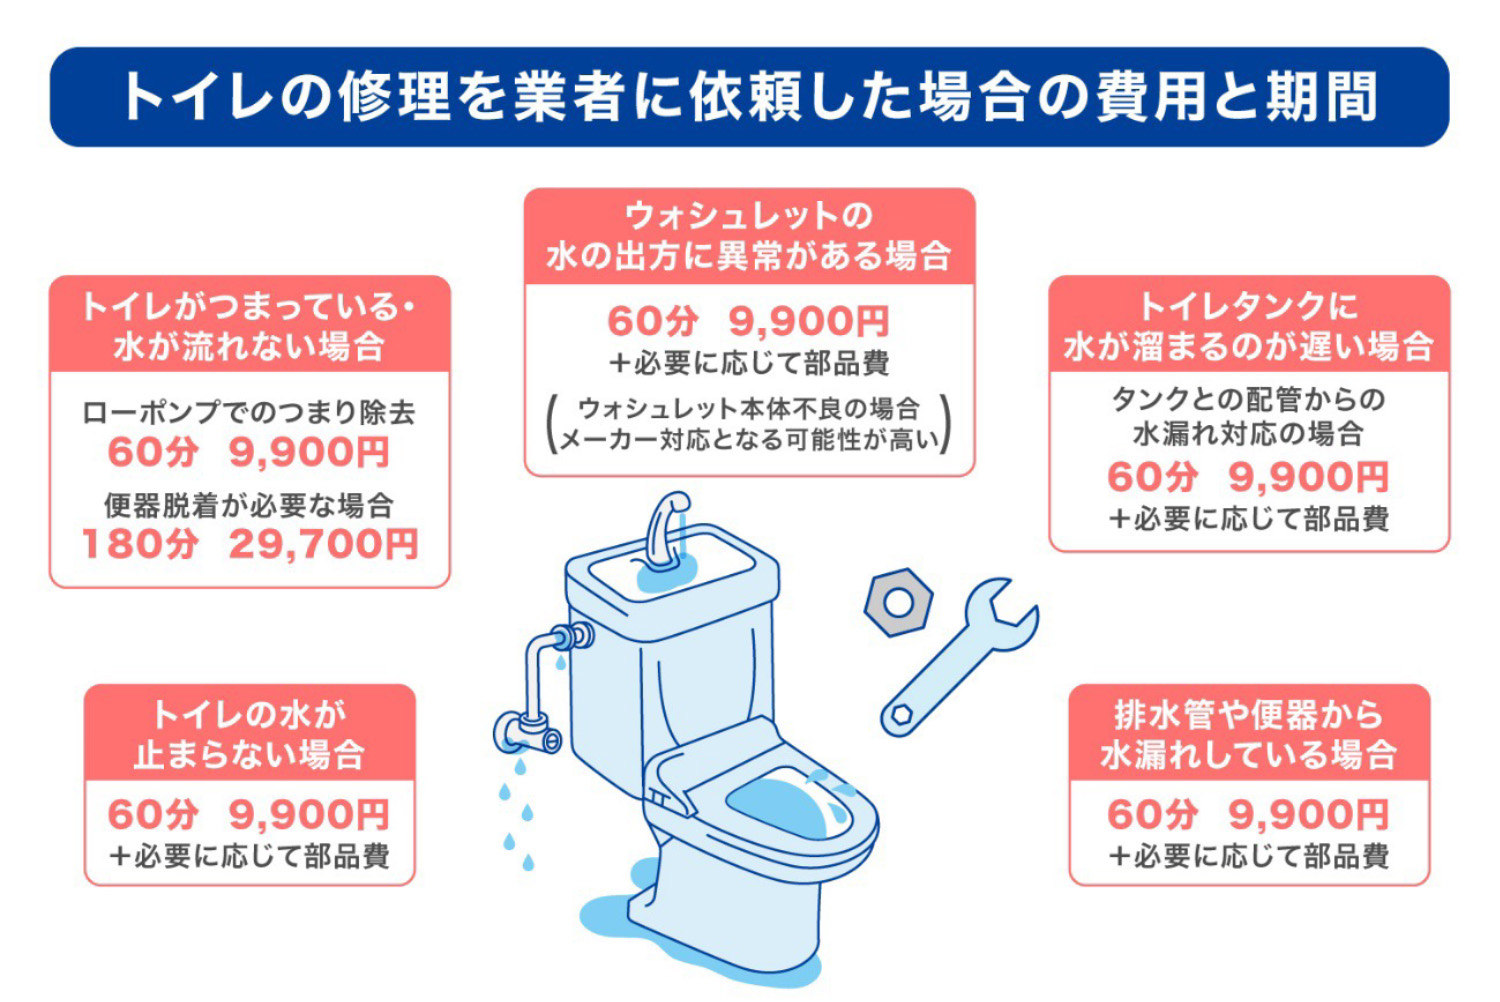 トイレの修理を業者に依頼した場合の費用と期間